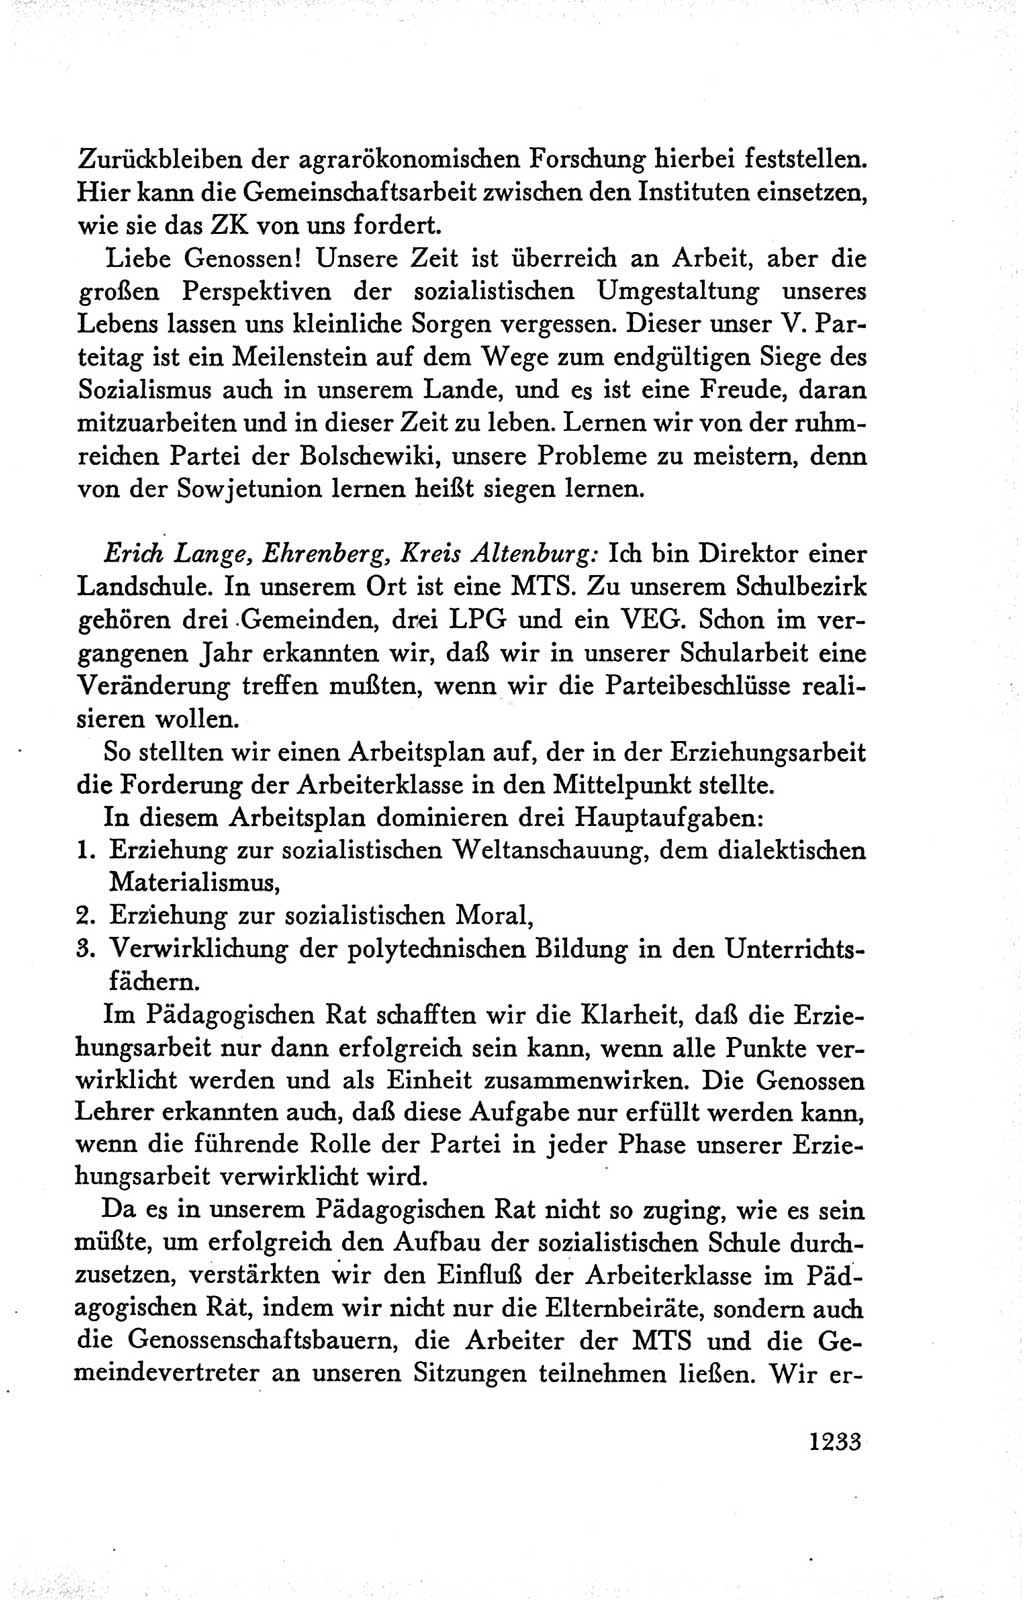 Protokoll der Verhandlungen des Ⅴ. Parteitages der Sozialistischen Einheitspartei Deutschlands (SED) [Deutsche Demokratische Republik (DDR)] 1958, Seite 1233